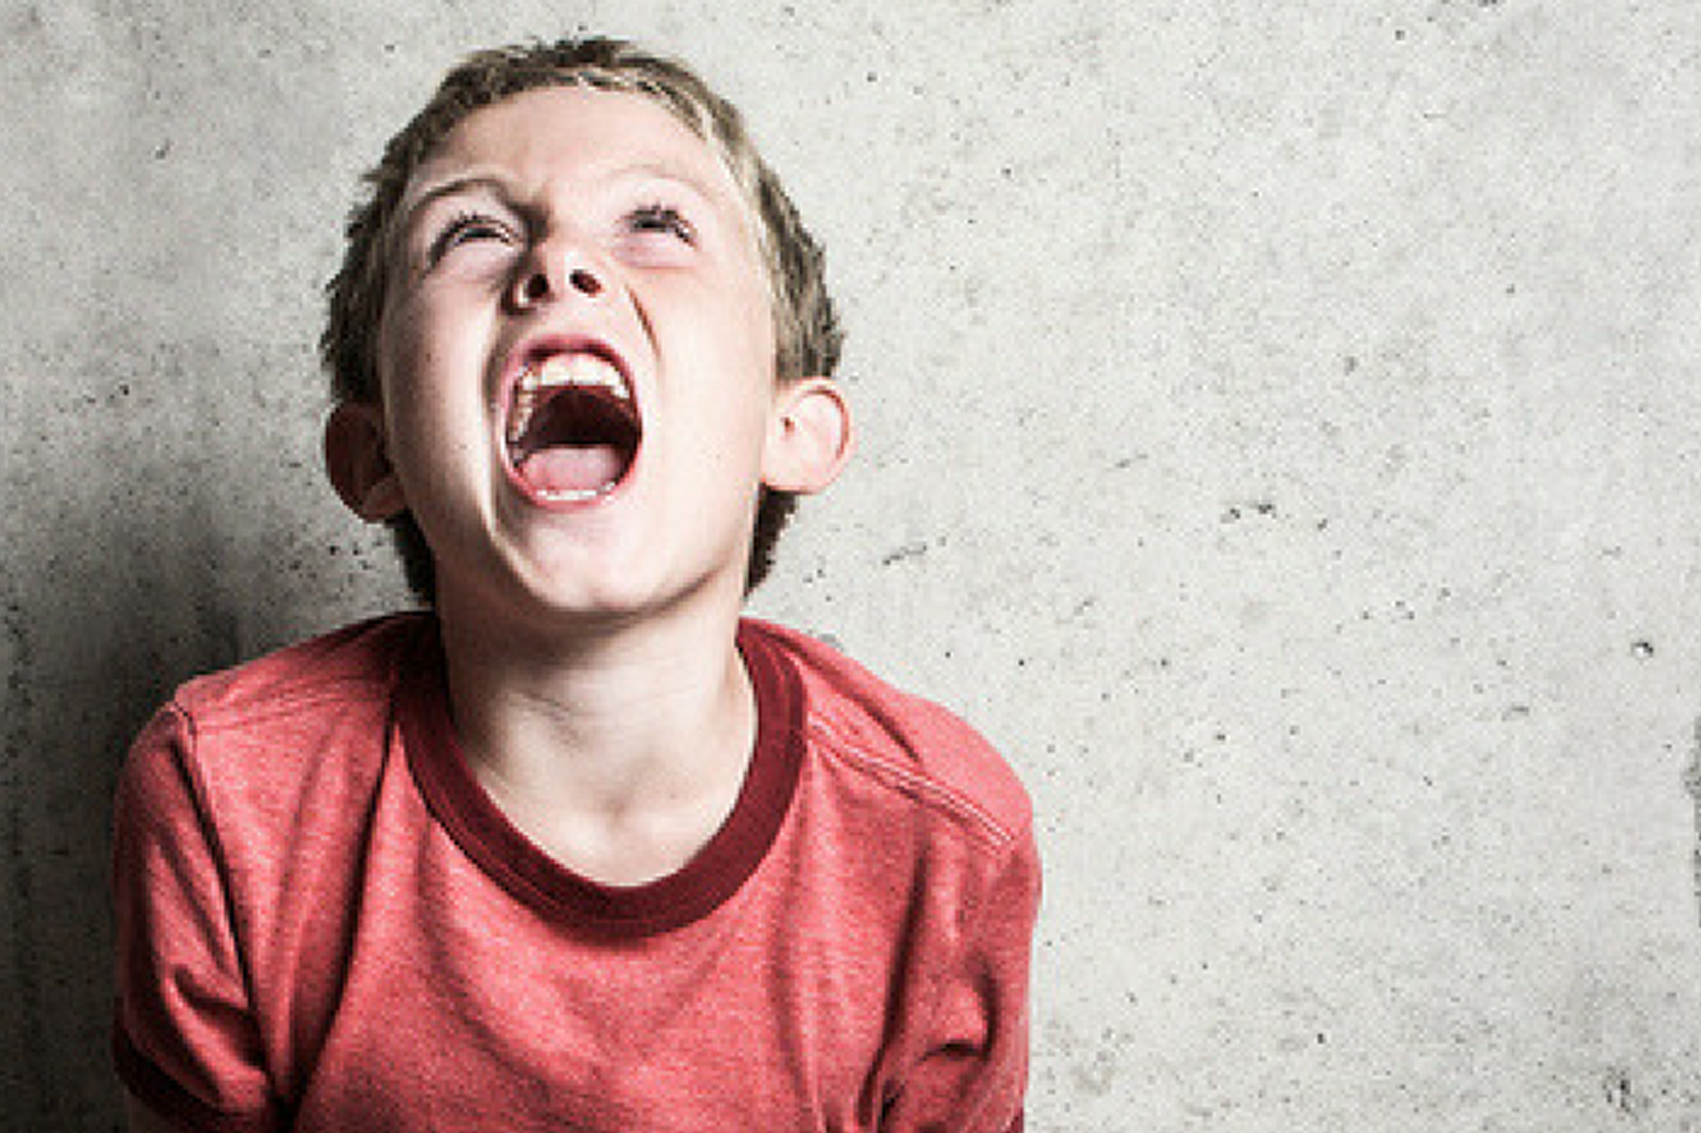 ثمانية نصائح للتغلب على السلوك العدواني لدى الاطفال ذوي اضطراب التوحد